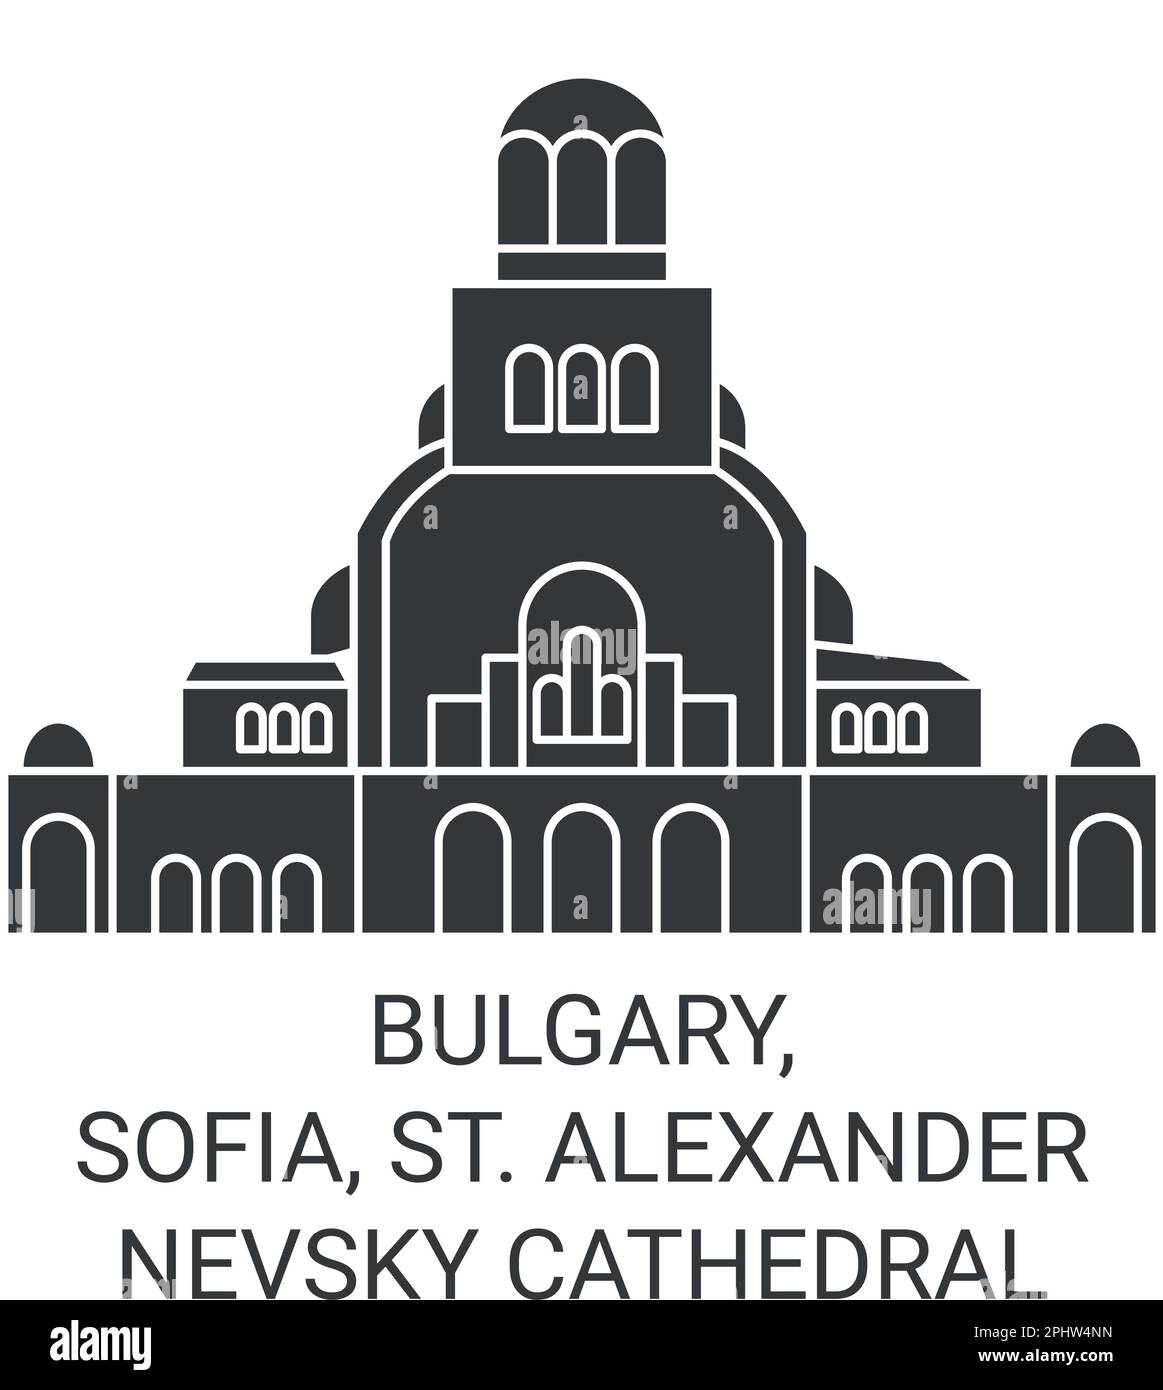 Bullary, Sofia, St. Alexander Nevsky Cathédrale voyage illustration vectorielle Illustration de Vecteur